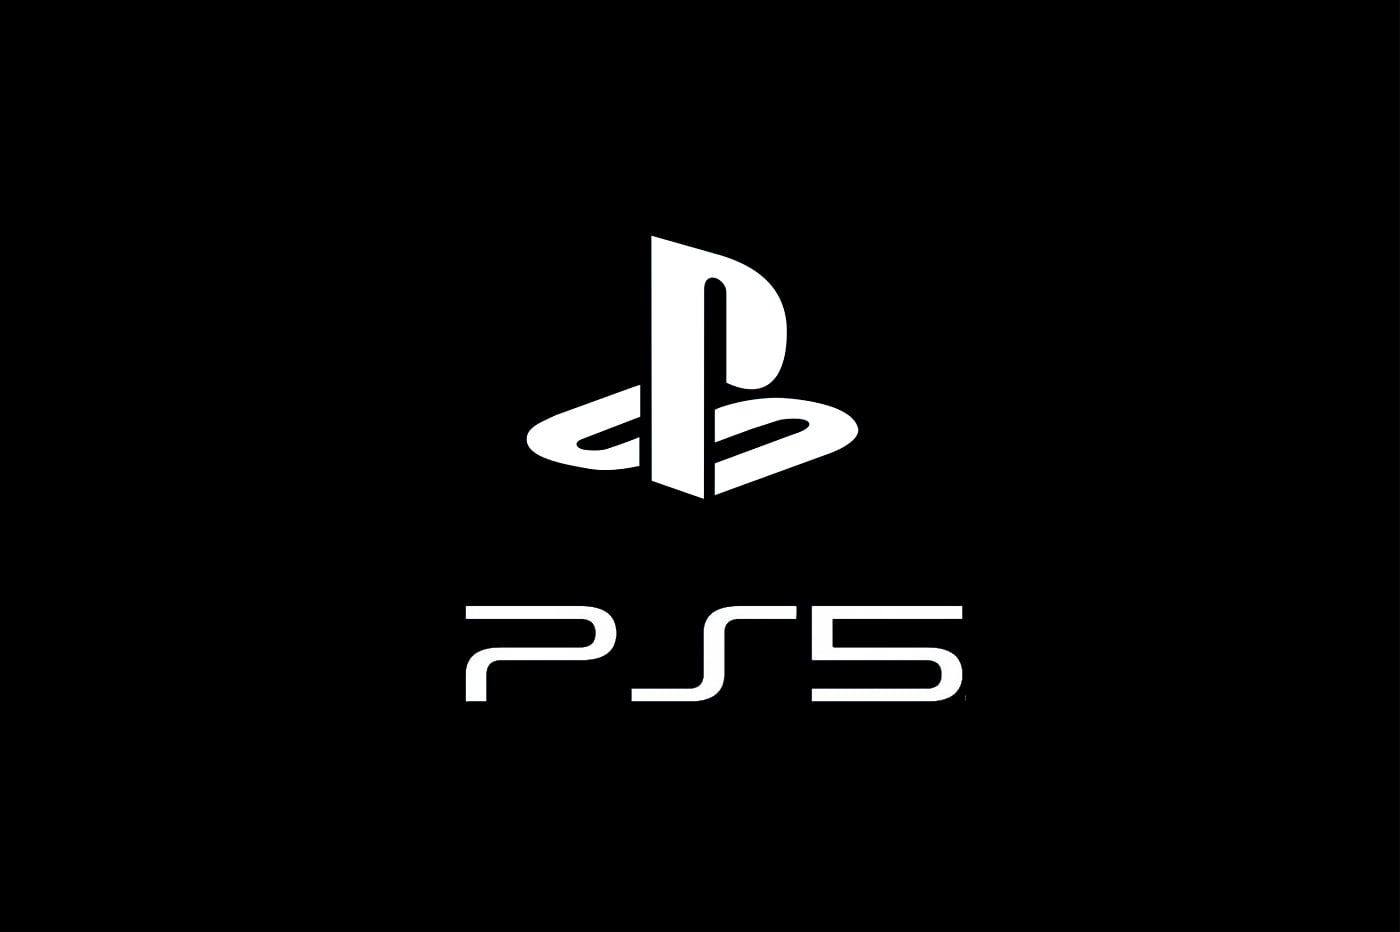 Ps5 não terá lançamento em outubro | b3282431 ps5 pas avant avril 2020 | playstation 5 | lançamento de two point campus playstation 5